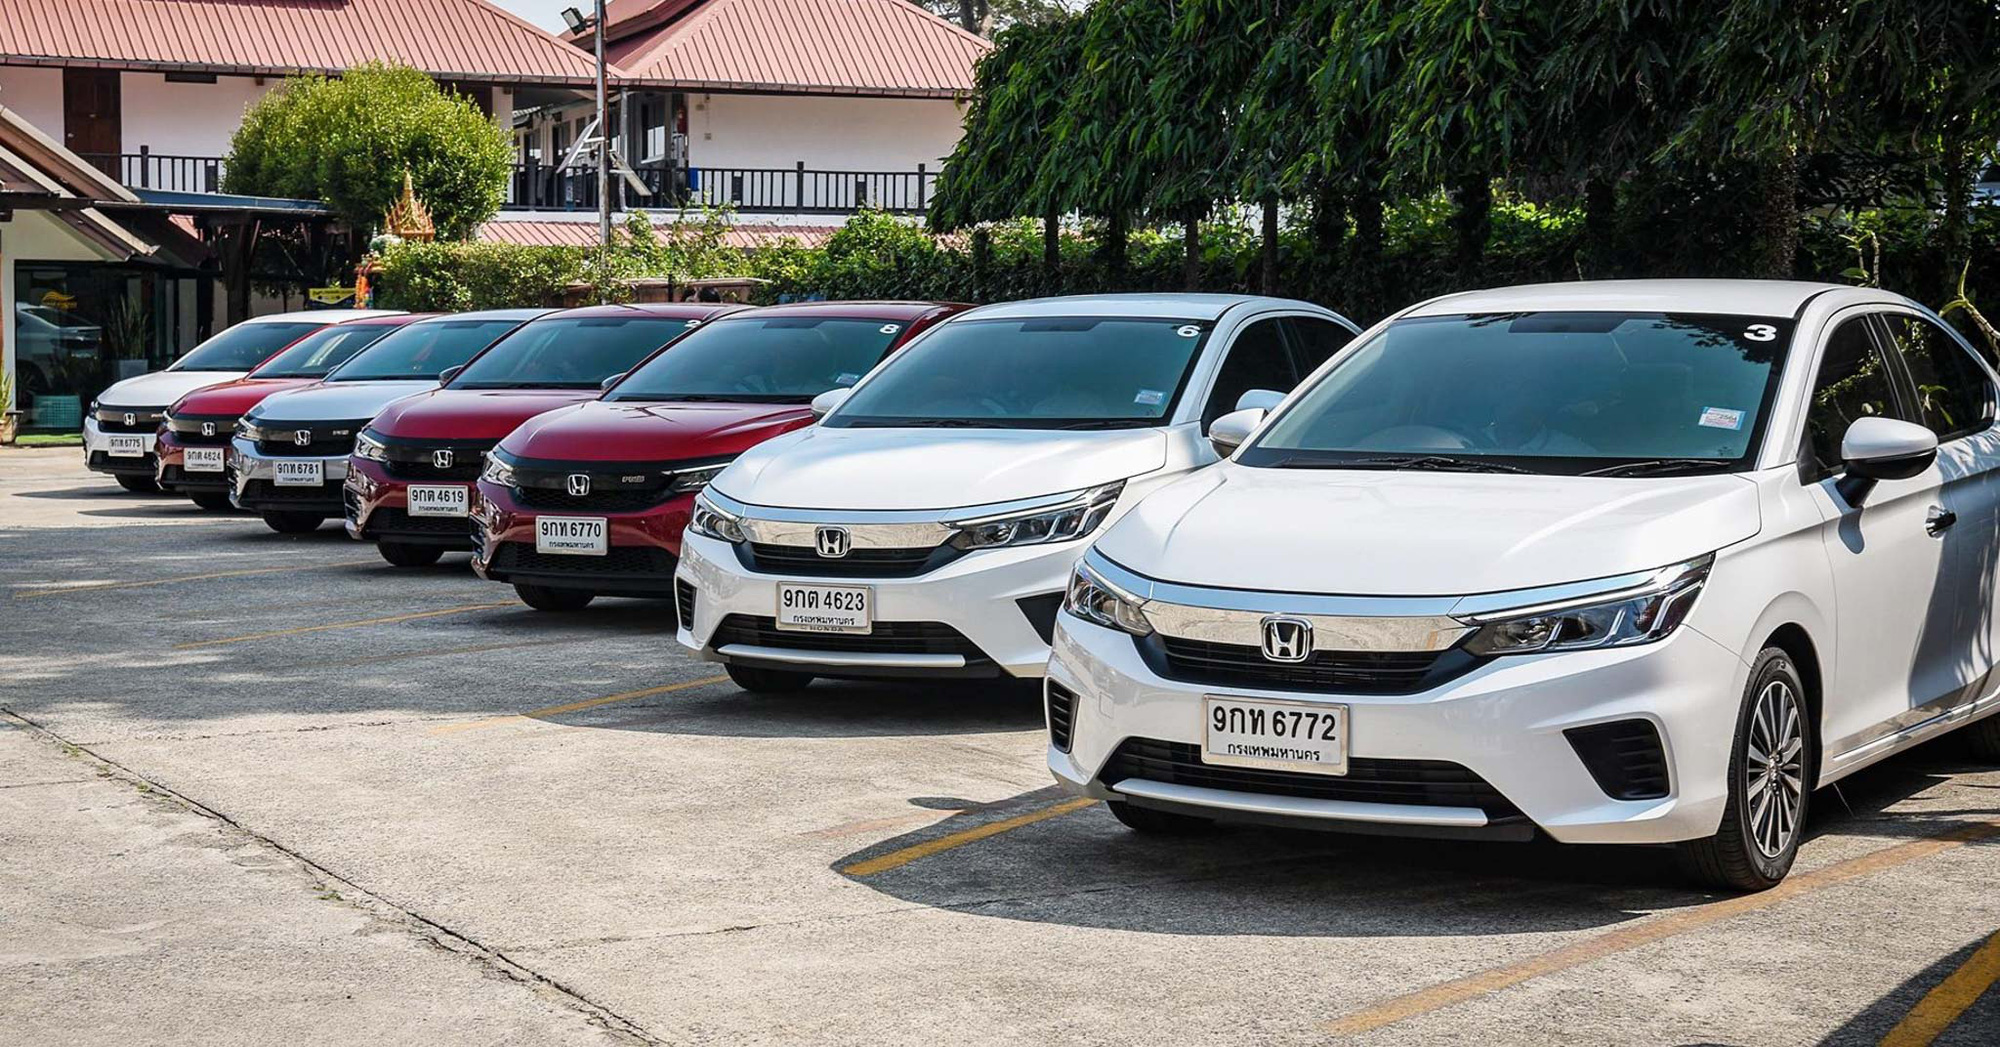 Đánh giá chi tiết xe Honda City 2021: Thiết kế mới, giá bao nhiêu?, khi nào về Việt Nam?